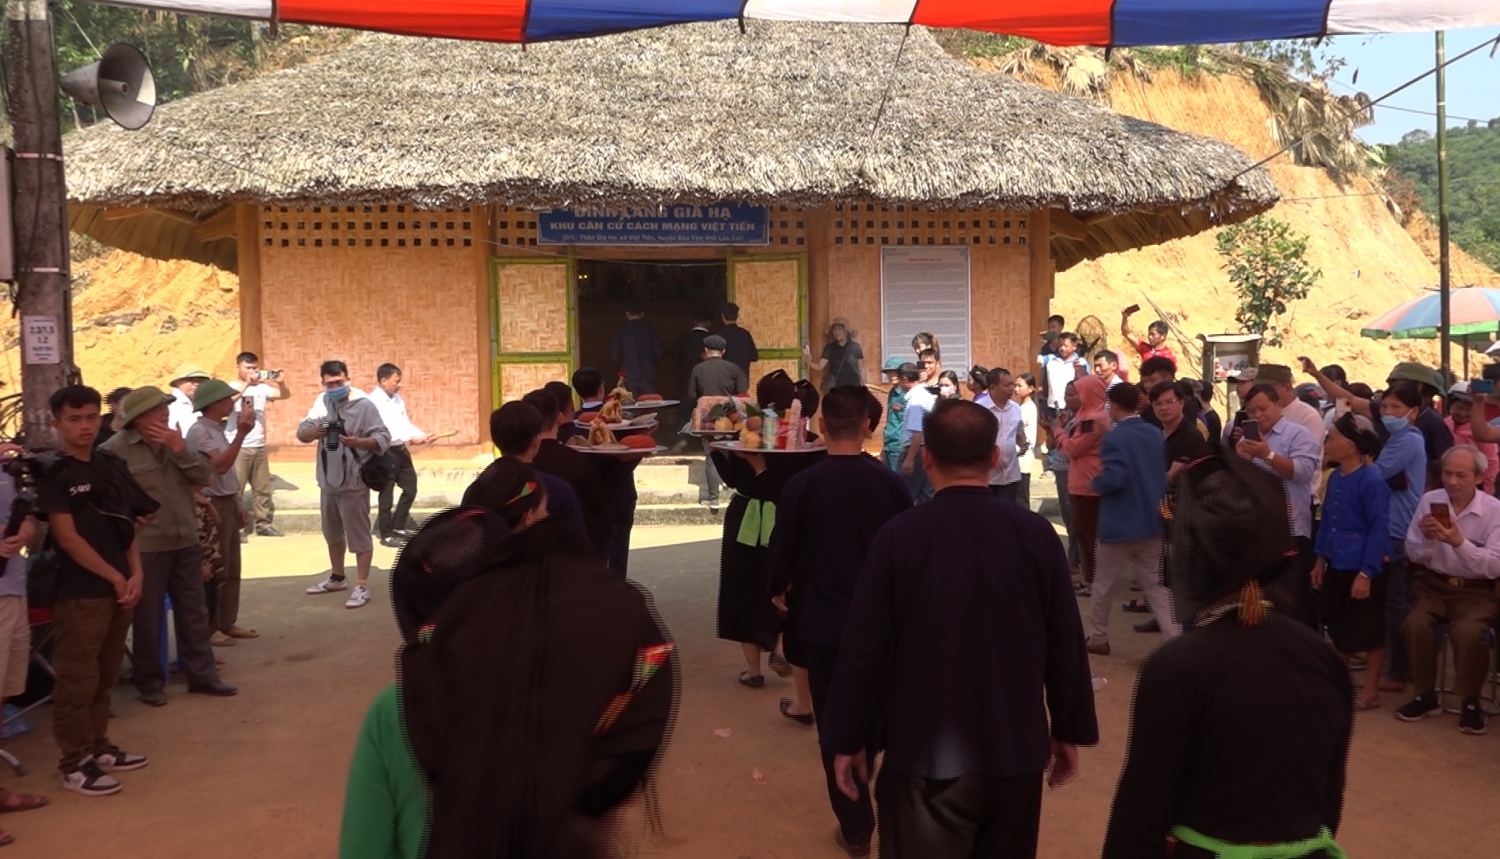 Dâng mâm lễ vào Đình làng Già Hạ